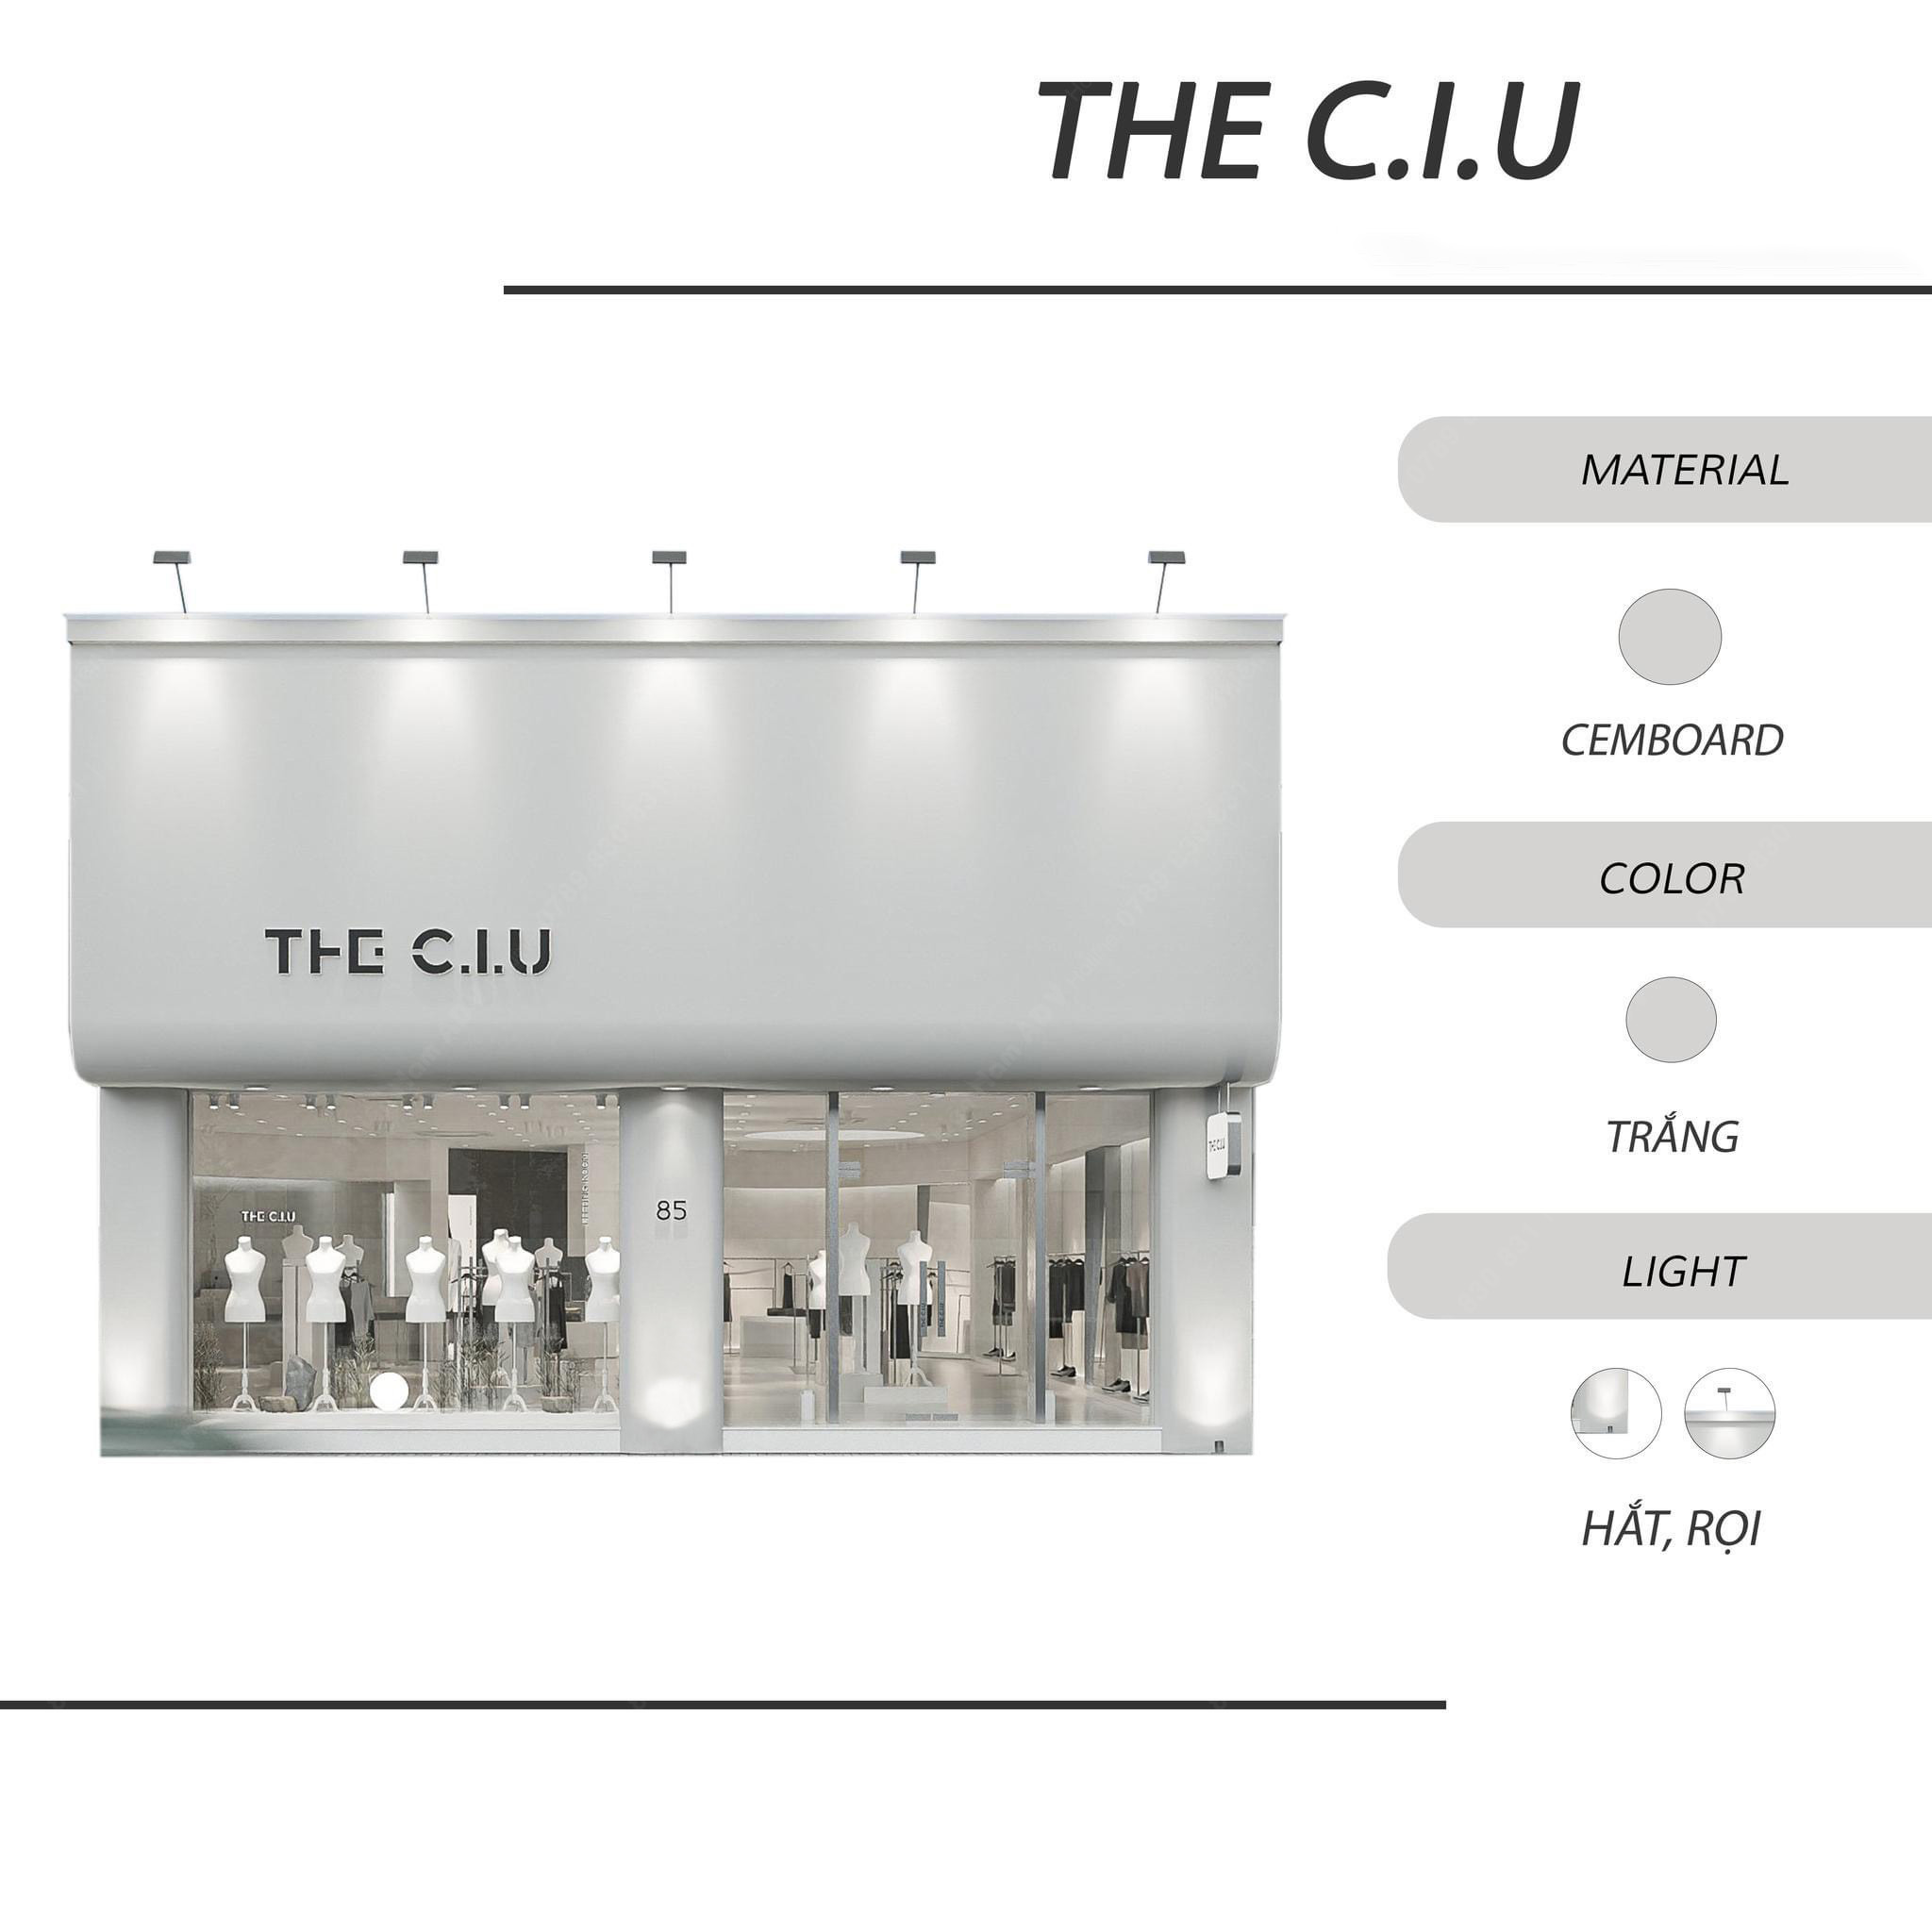 Thiết kế bảng hiệu cửa hàng quần áo THE C.I.U trẻ trung, đơn giản